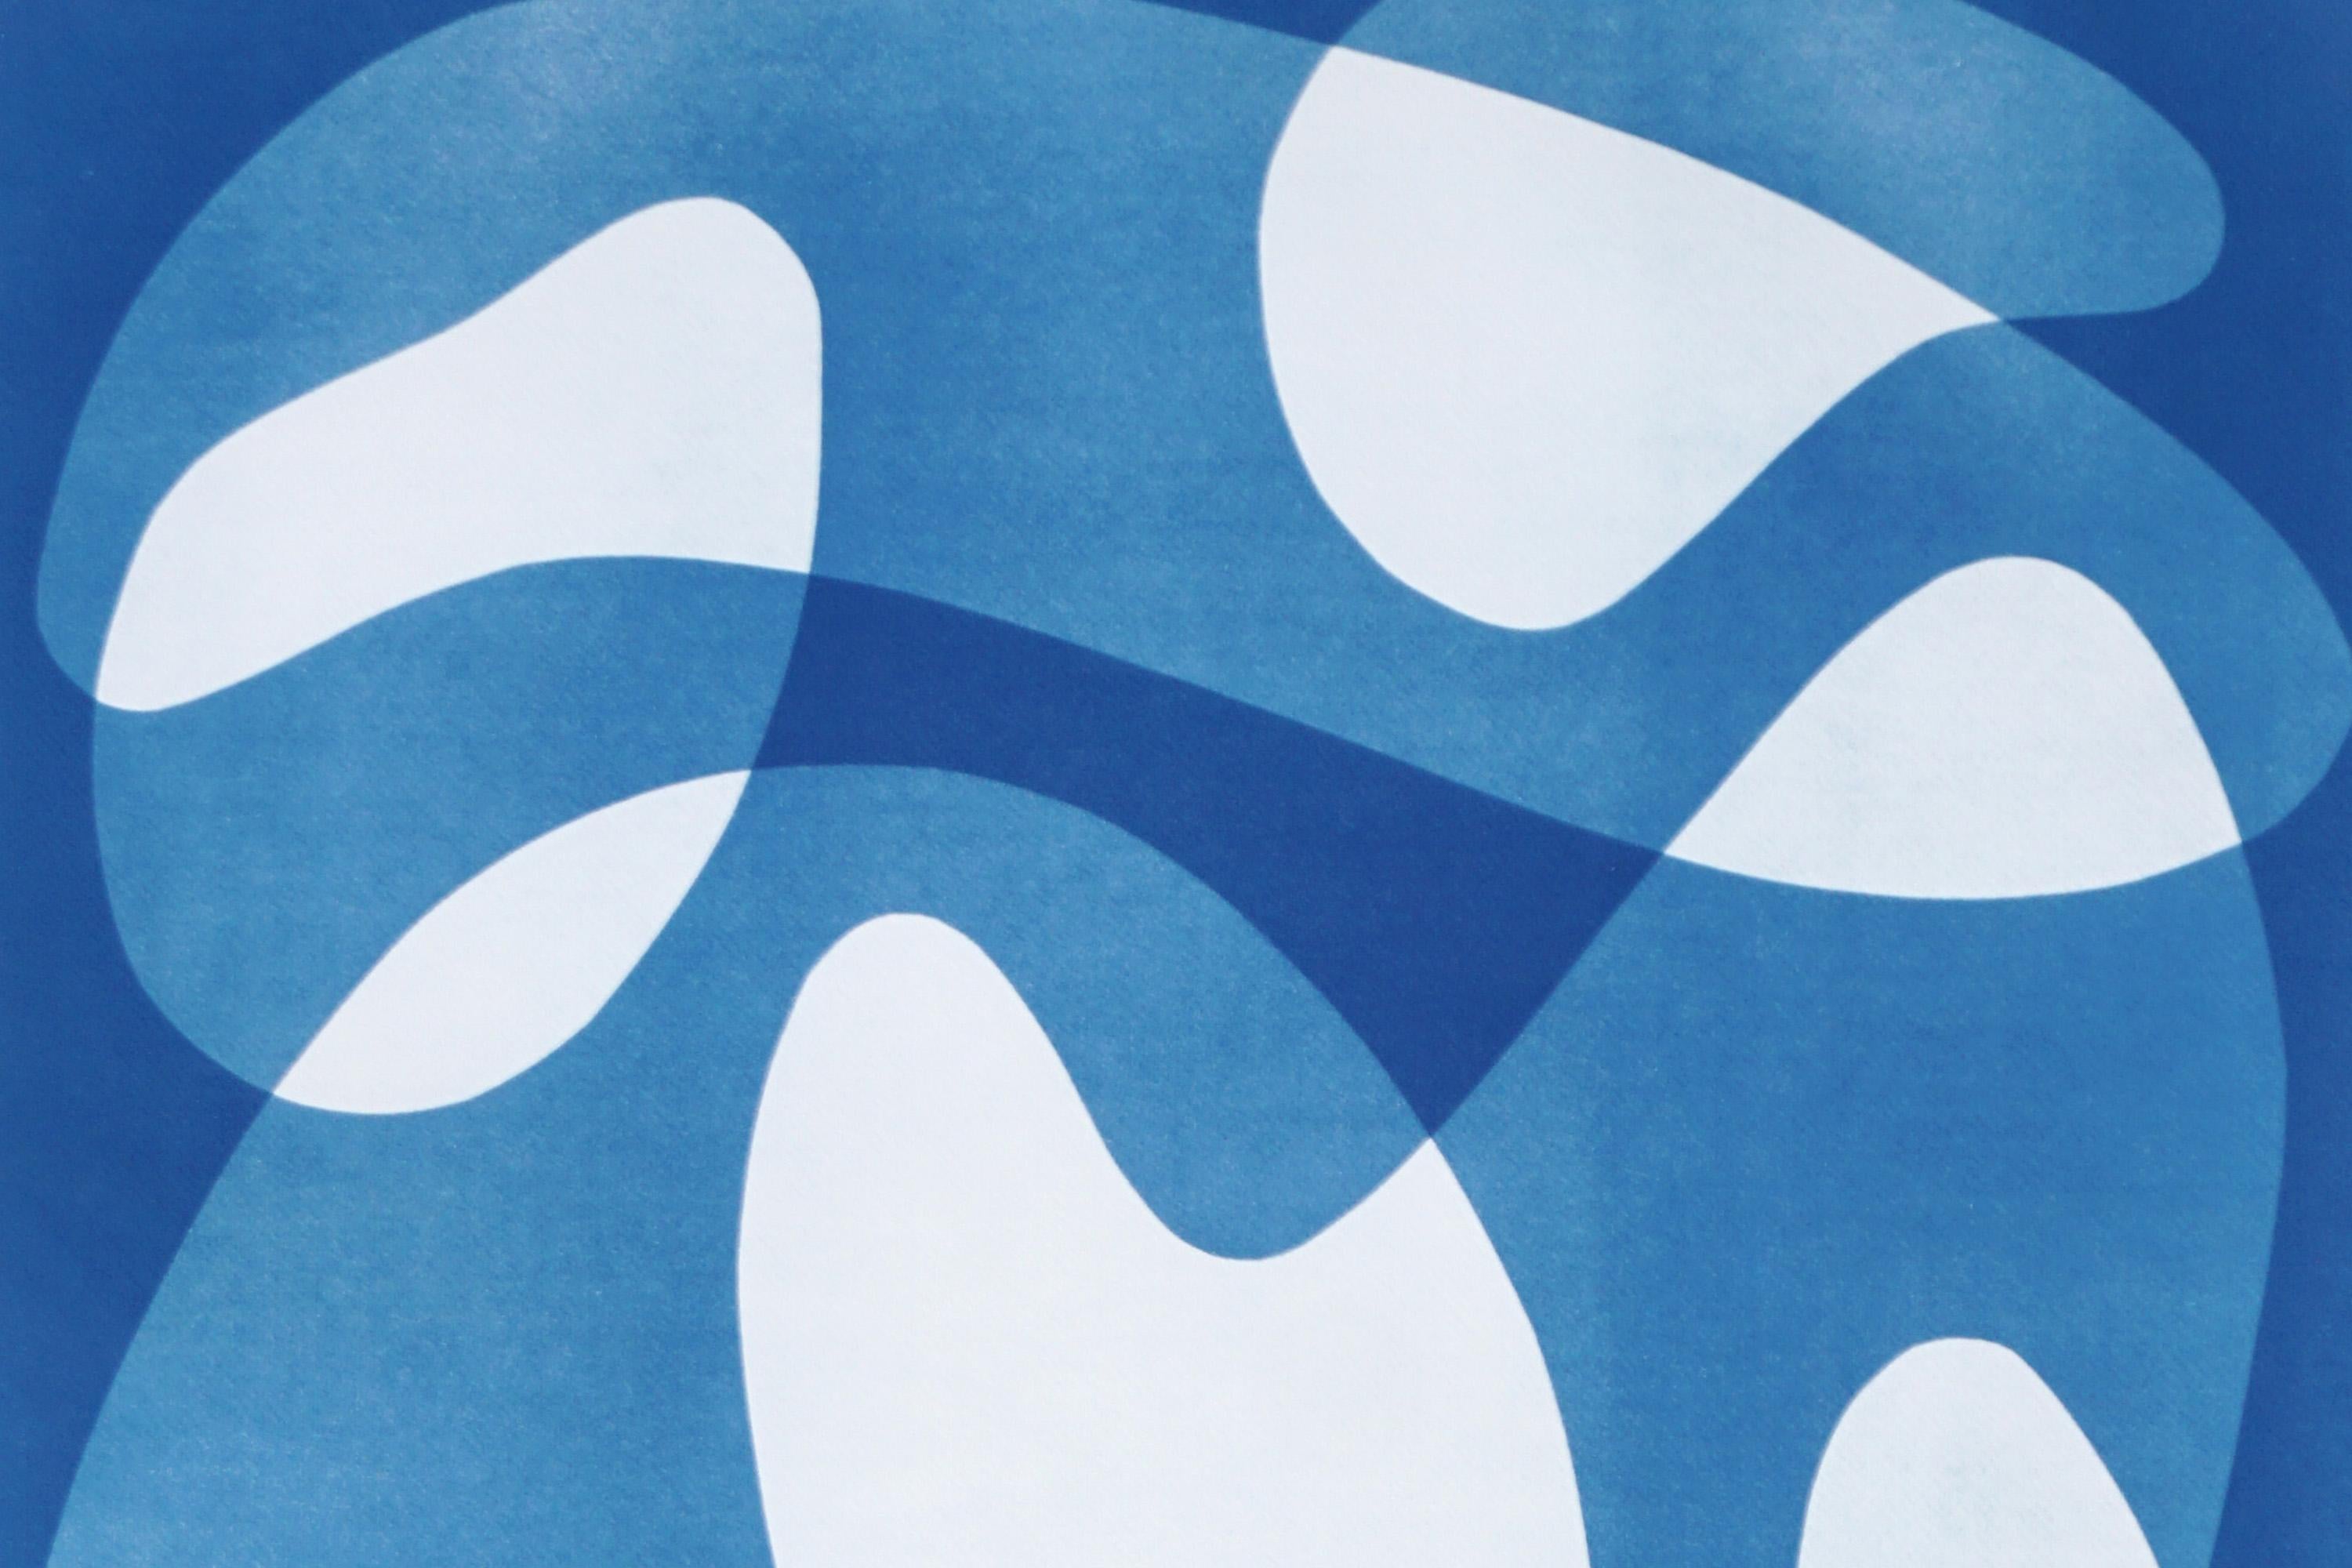 Shapes IV, formes flottantes abstraites blanches et bleues, cyanotype unique du milieu du siècle dernier - Bauhaus Print par Kind of Cyan